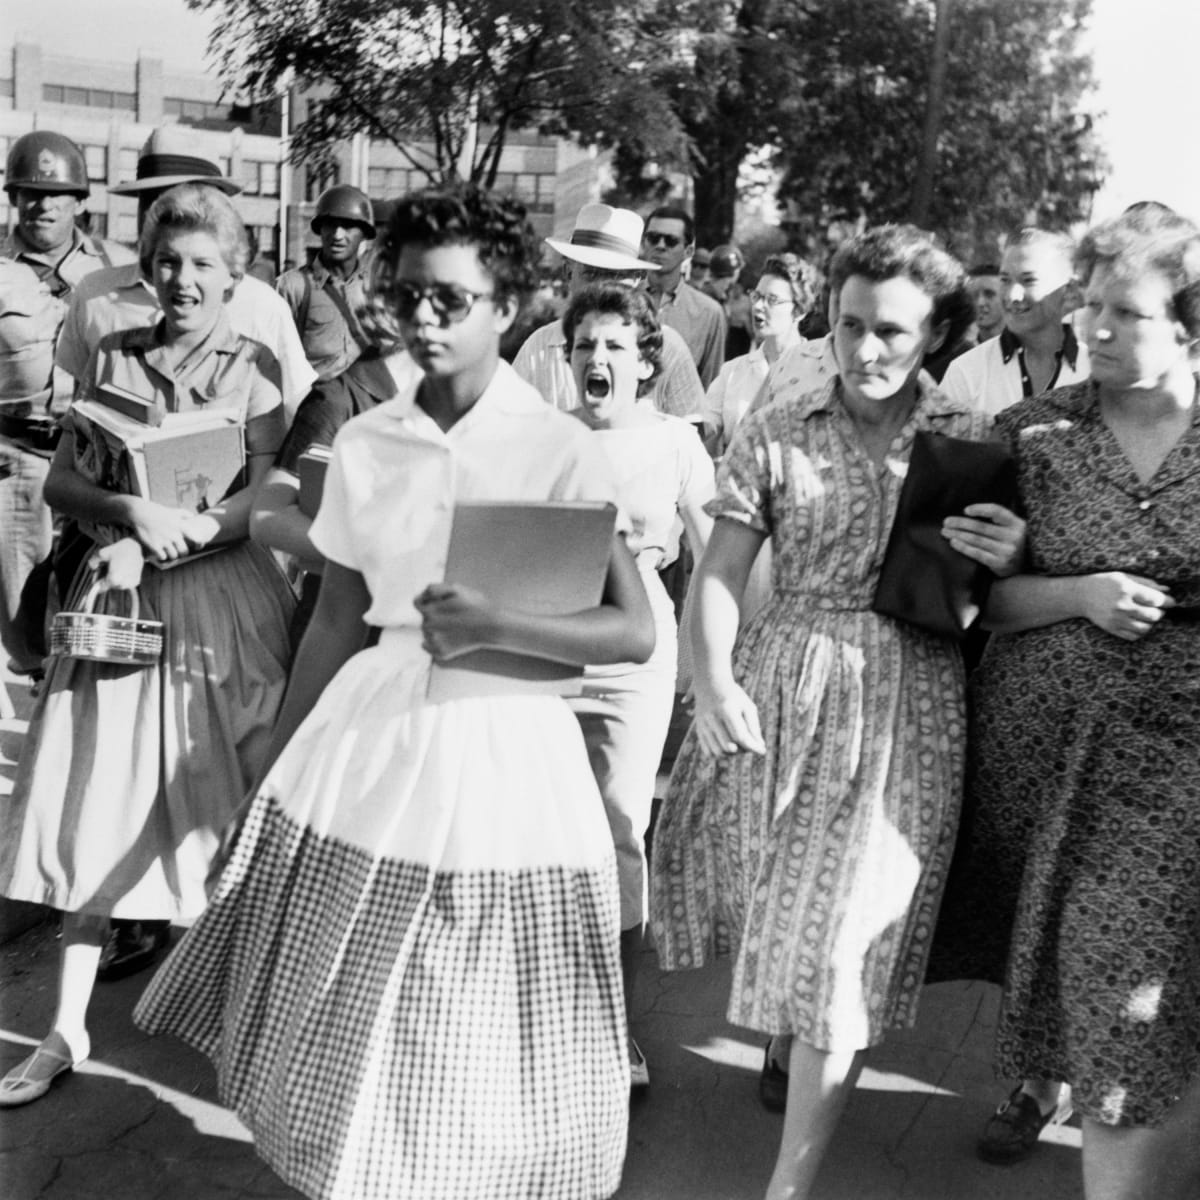 Kerajaan cakap boleh, tapi Whites di Selatan masih degil.Apabila 9 budak Blacks nak memasuki Little Rock Central High School di Arkansas pada September 1957, budak Whites duk harass mereka dan menghalang mereka masuk.